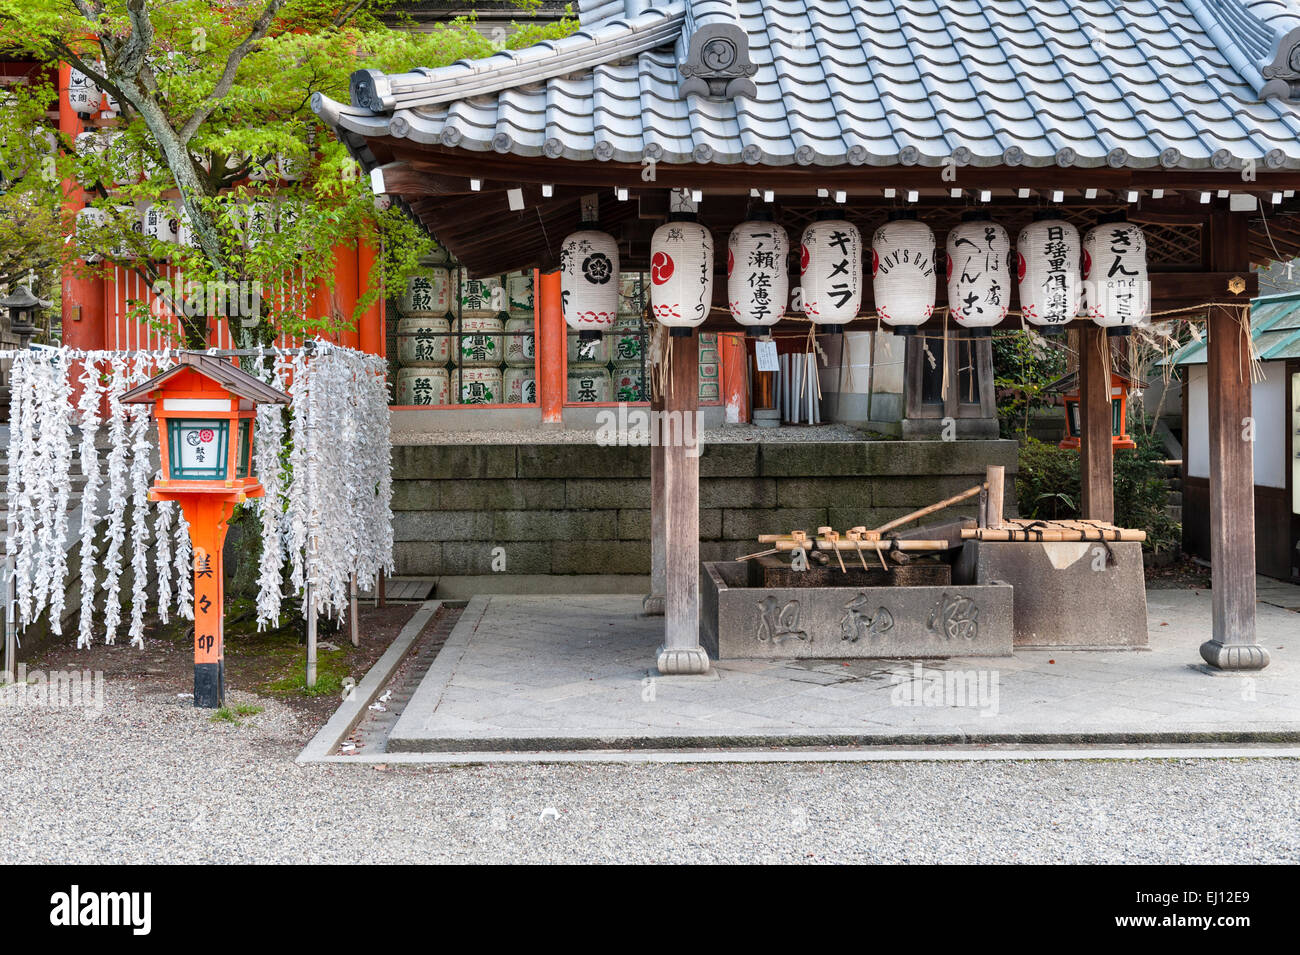 Quartier de Gion, Kyoto, Japon. Le Yasaka, un temple Shinto. L'temizuya ou purification font de purification rituelle Banque D'Images